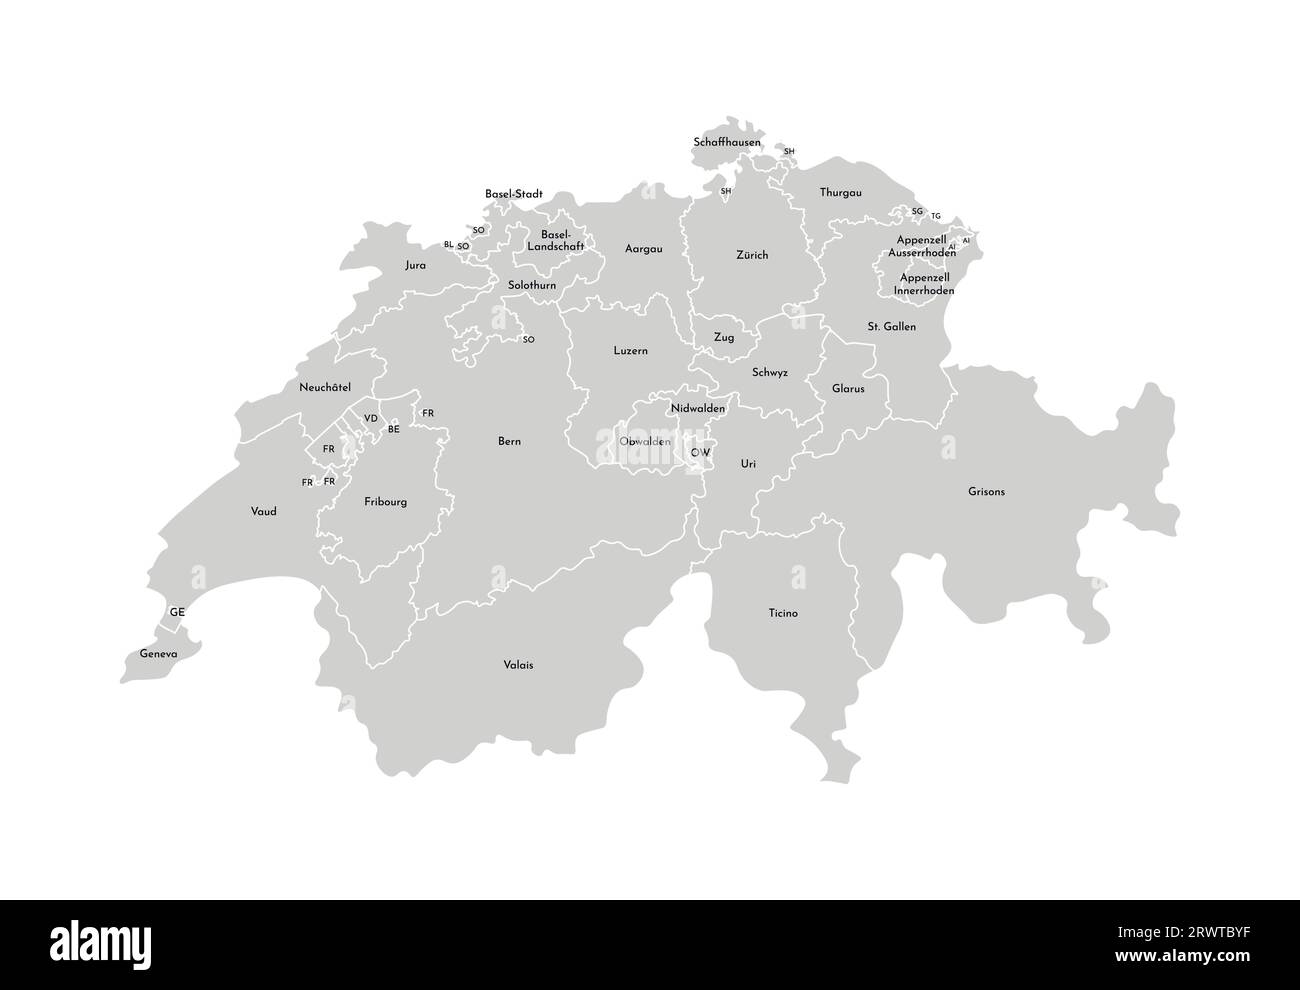 Vektorisolierte Darstellung einer vereinfachten Verwaltungskarte der Schweiz. Grenzen und Namen der Provinzen (Regionen). Graue Silhouetten. Weiß Stock Vektor